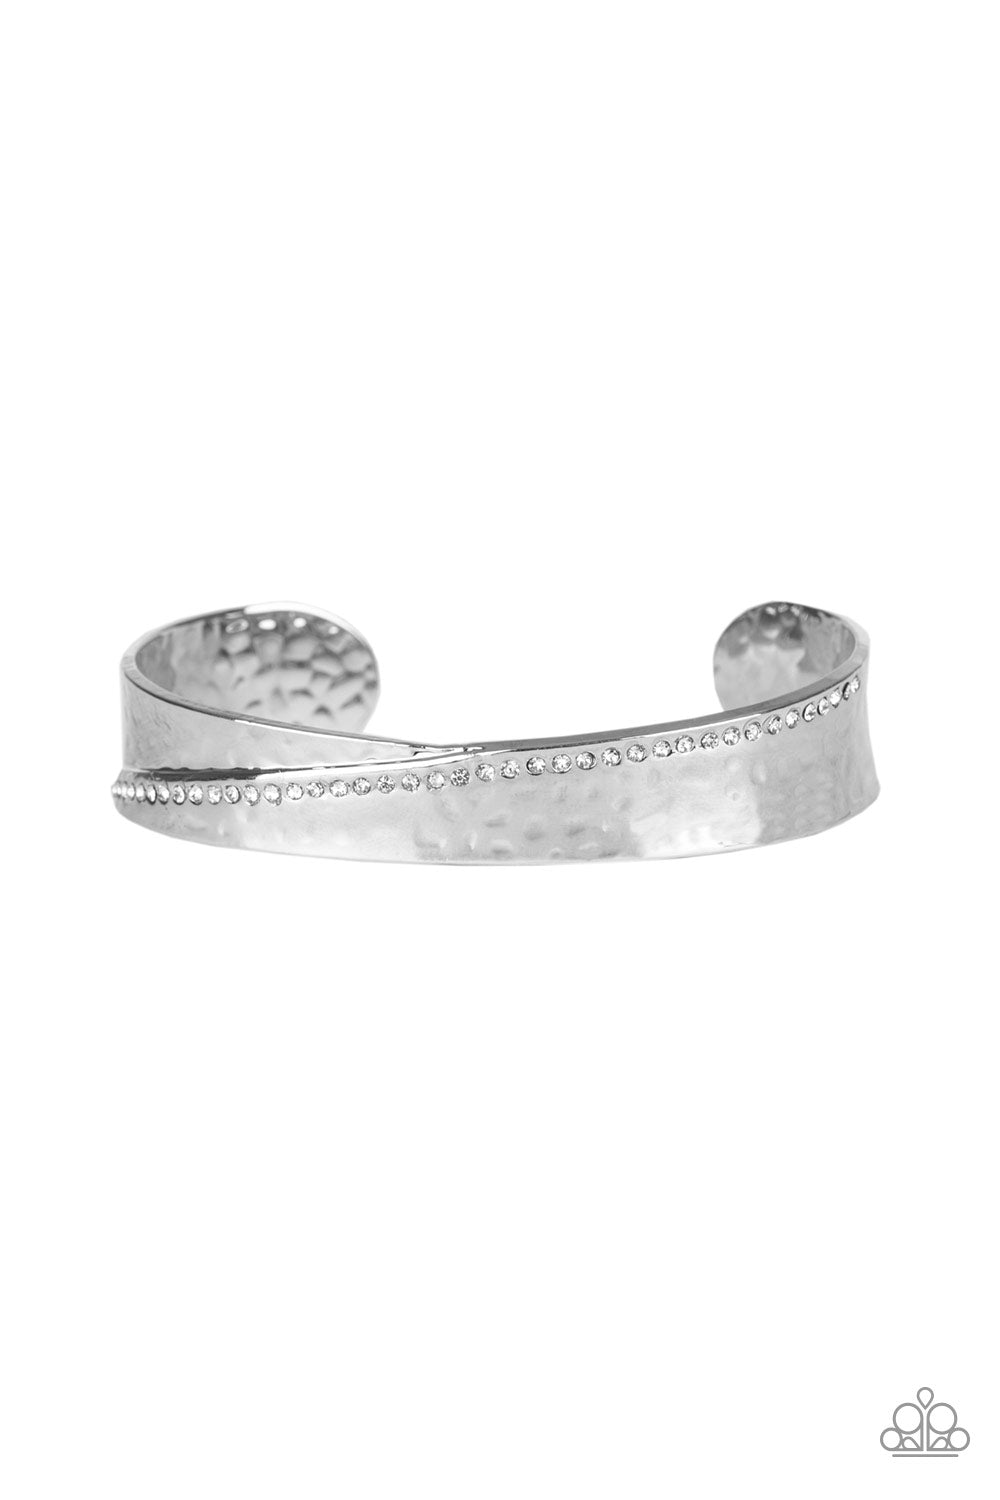 Urban Men's Hammered Cuff Bracelet